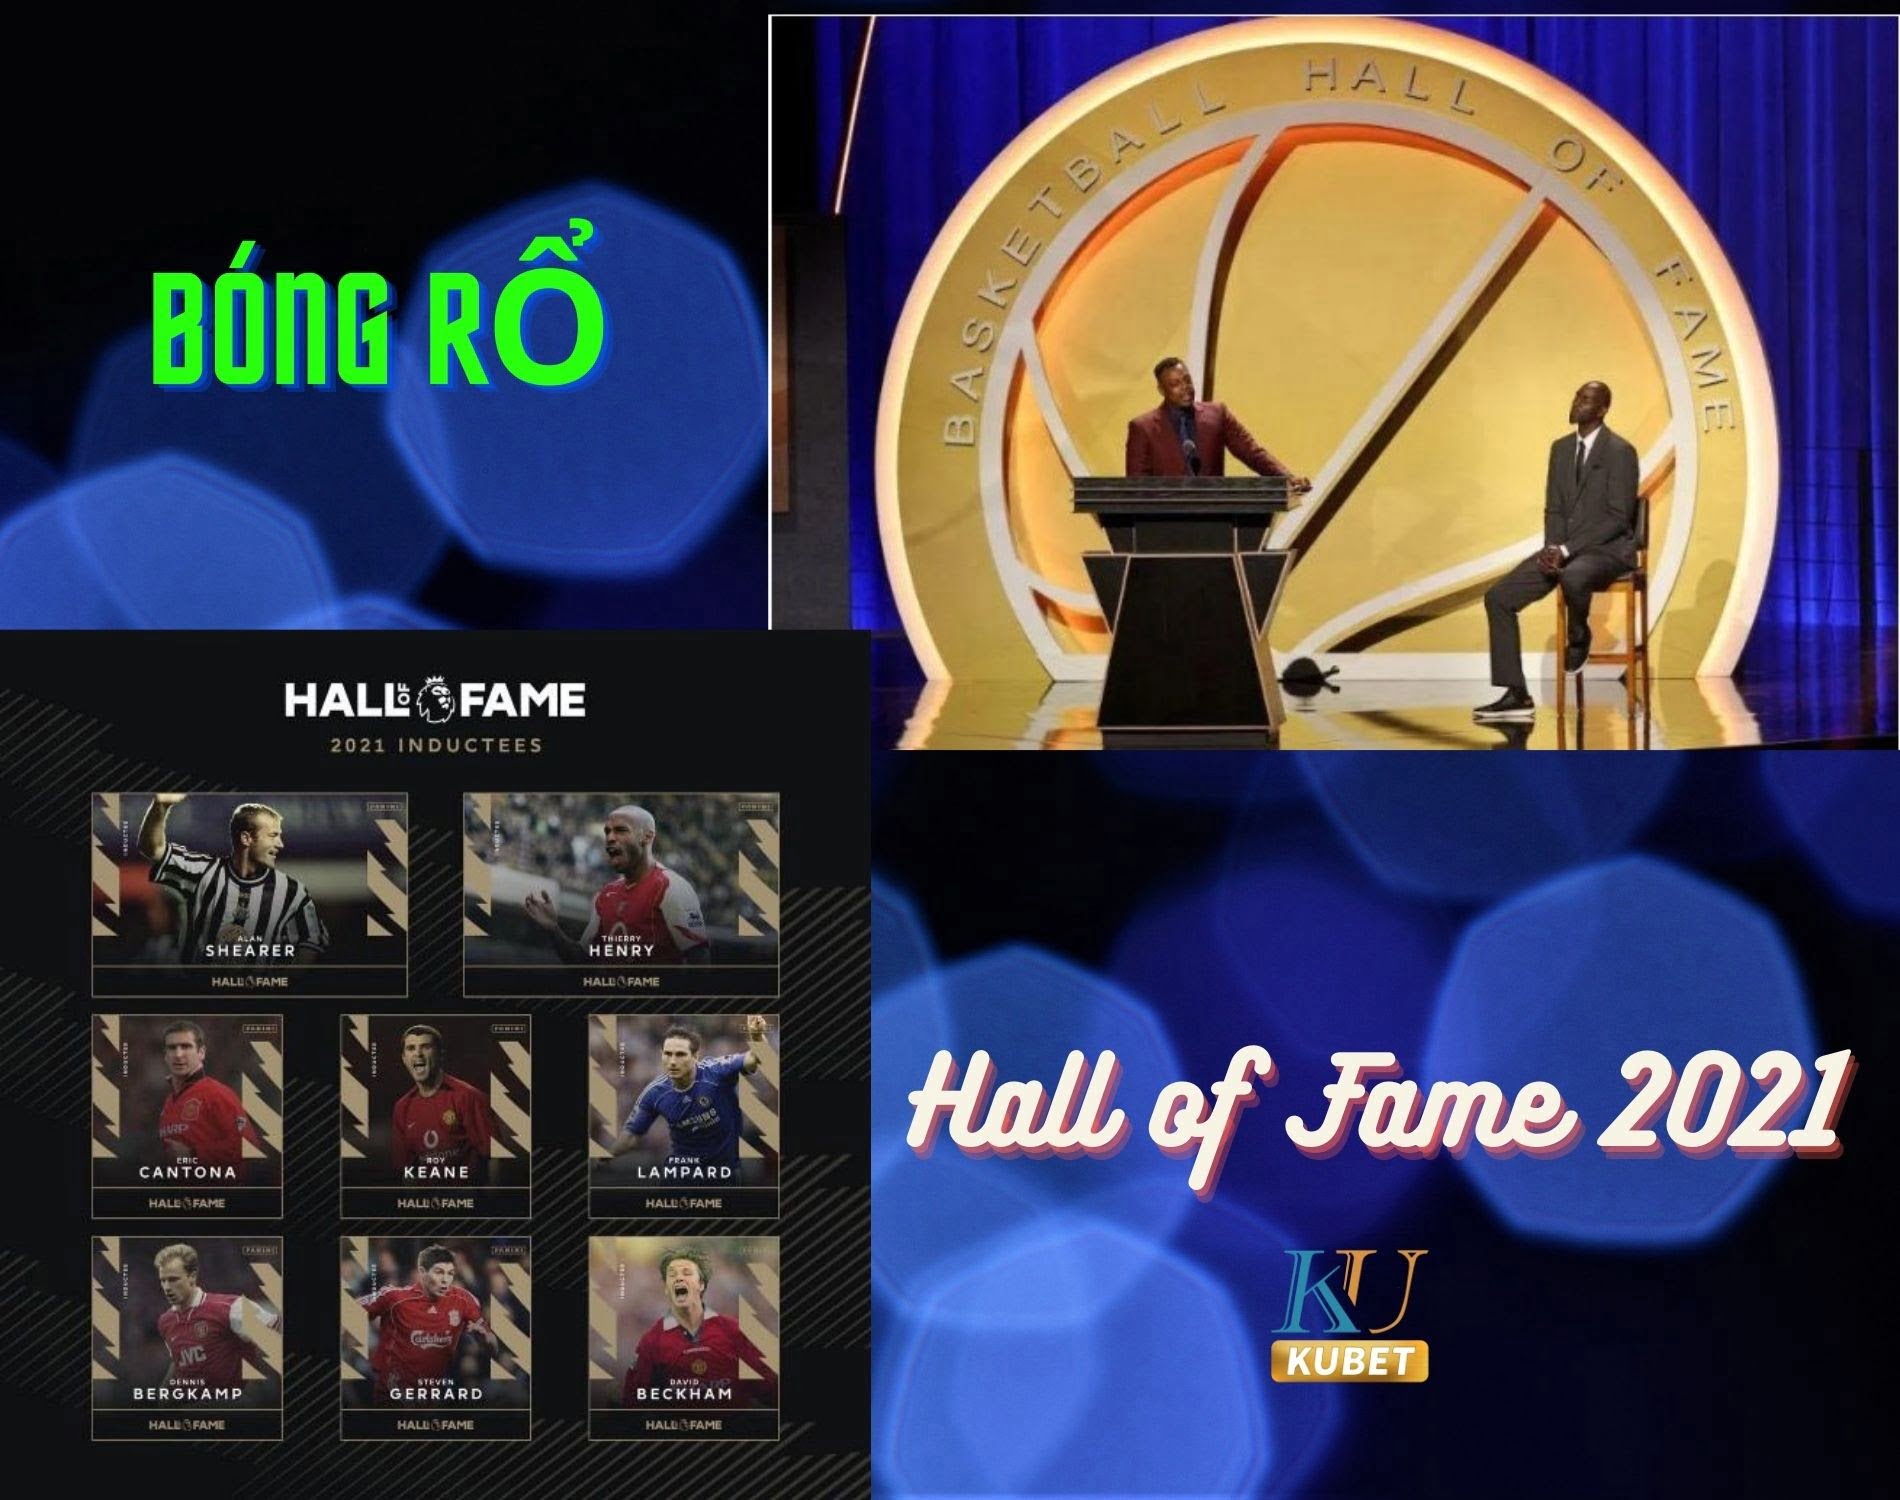 Bóng rổ 2021: Cầu thủ được chọn bóng rổ Hall of Fame 2021